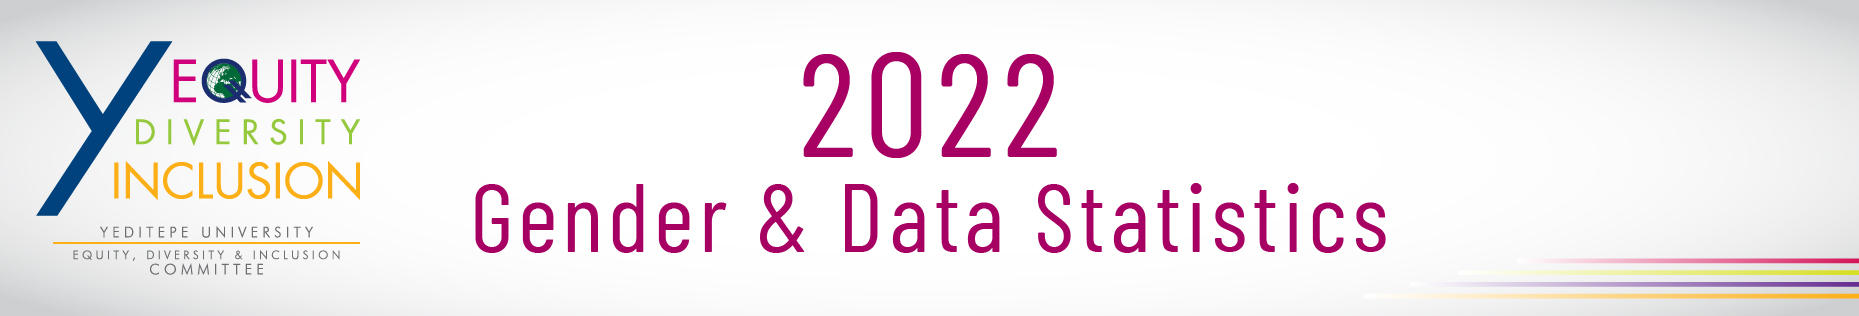 YTU Gender & Data Statistics 2021